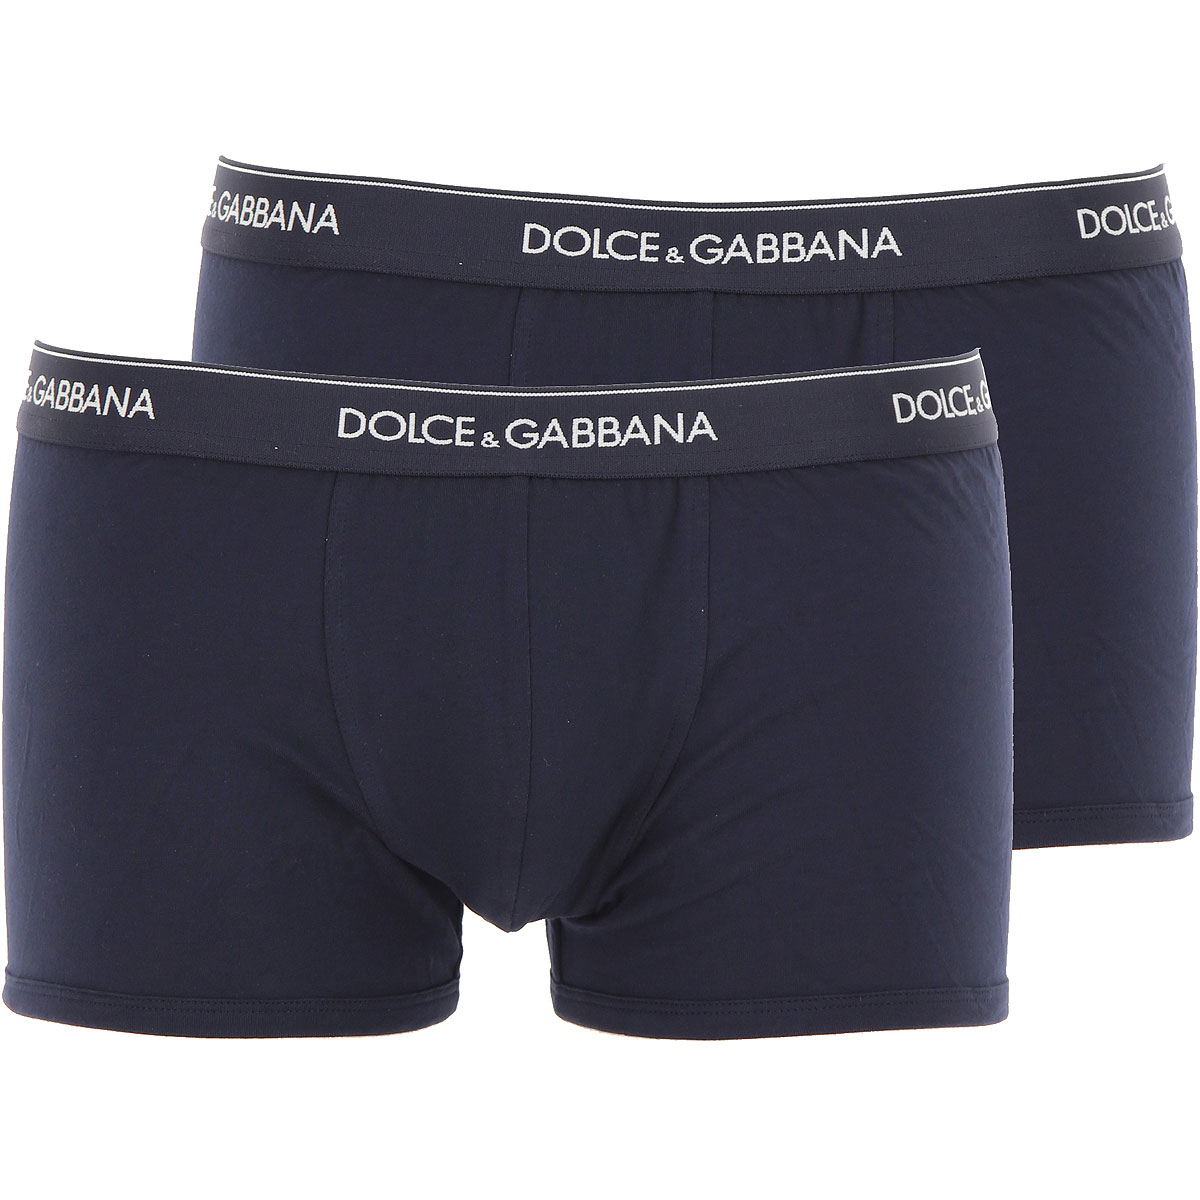 Dolce & Gabbana Boxer Shorts für Herren, Unterhose, Short, Boxer Günstig im Sale, 2 Pack, Marineblau, Baumwolle, 2017, M S XL